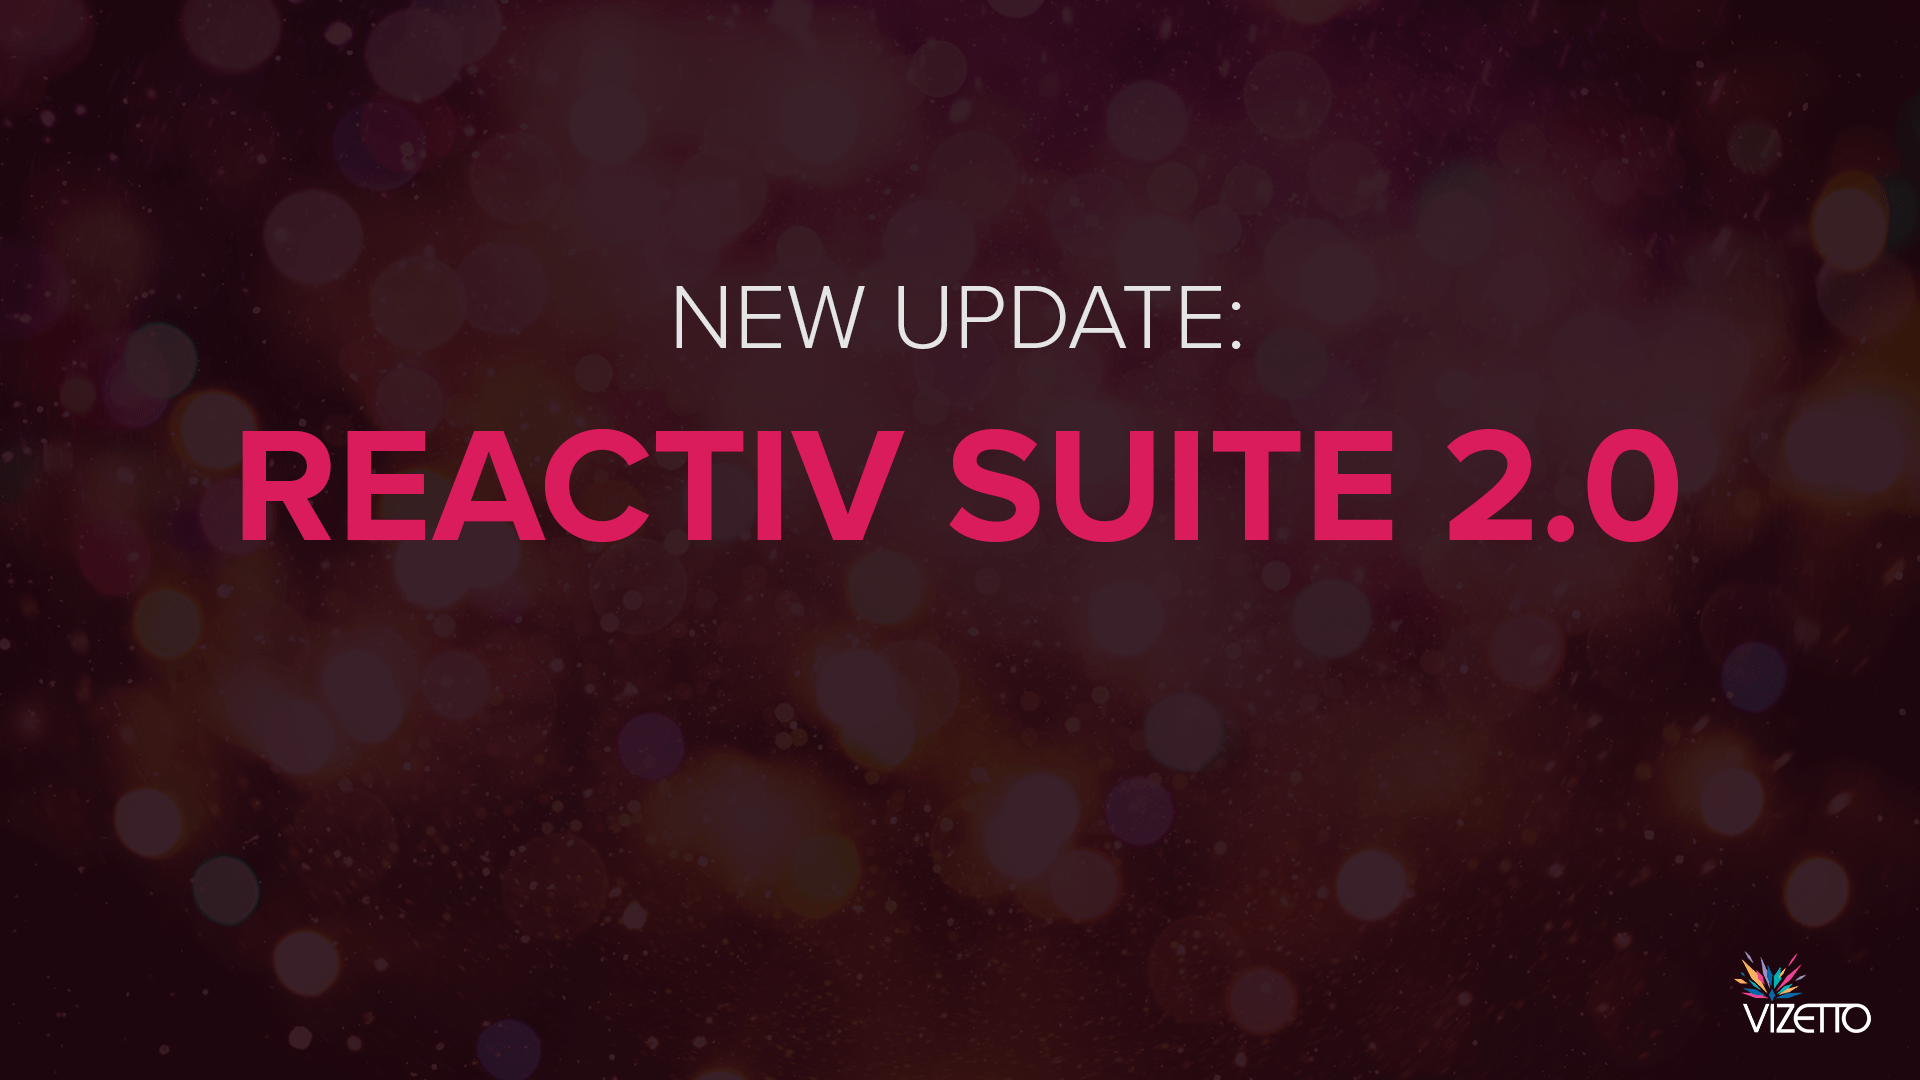 New update Reactiv SUITE 2.0